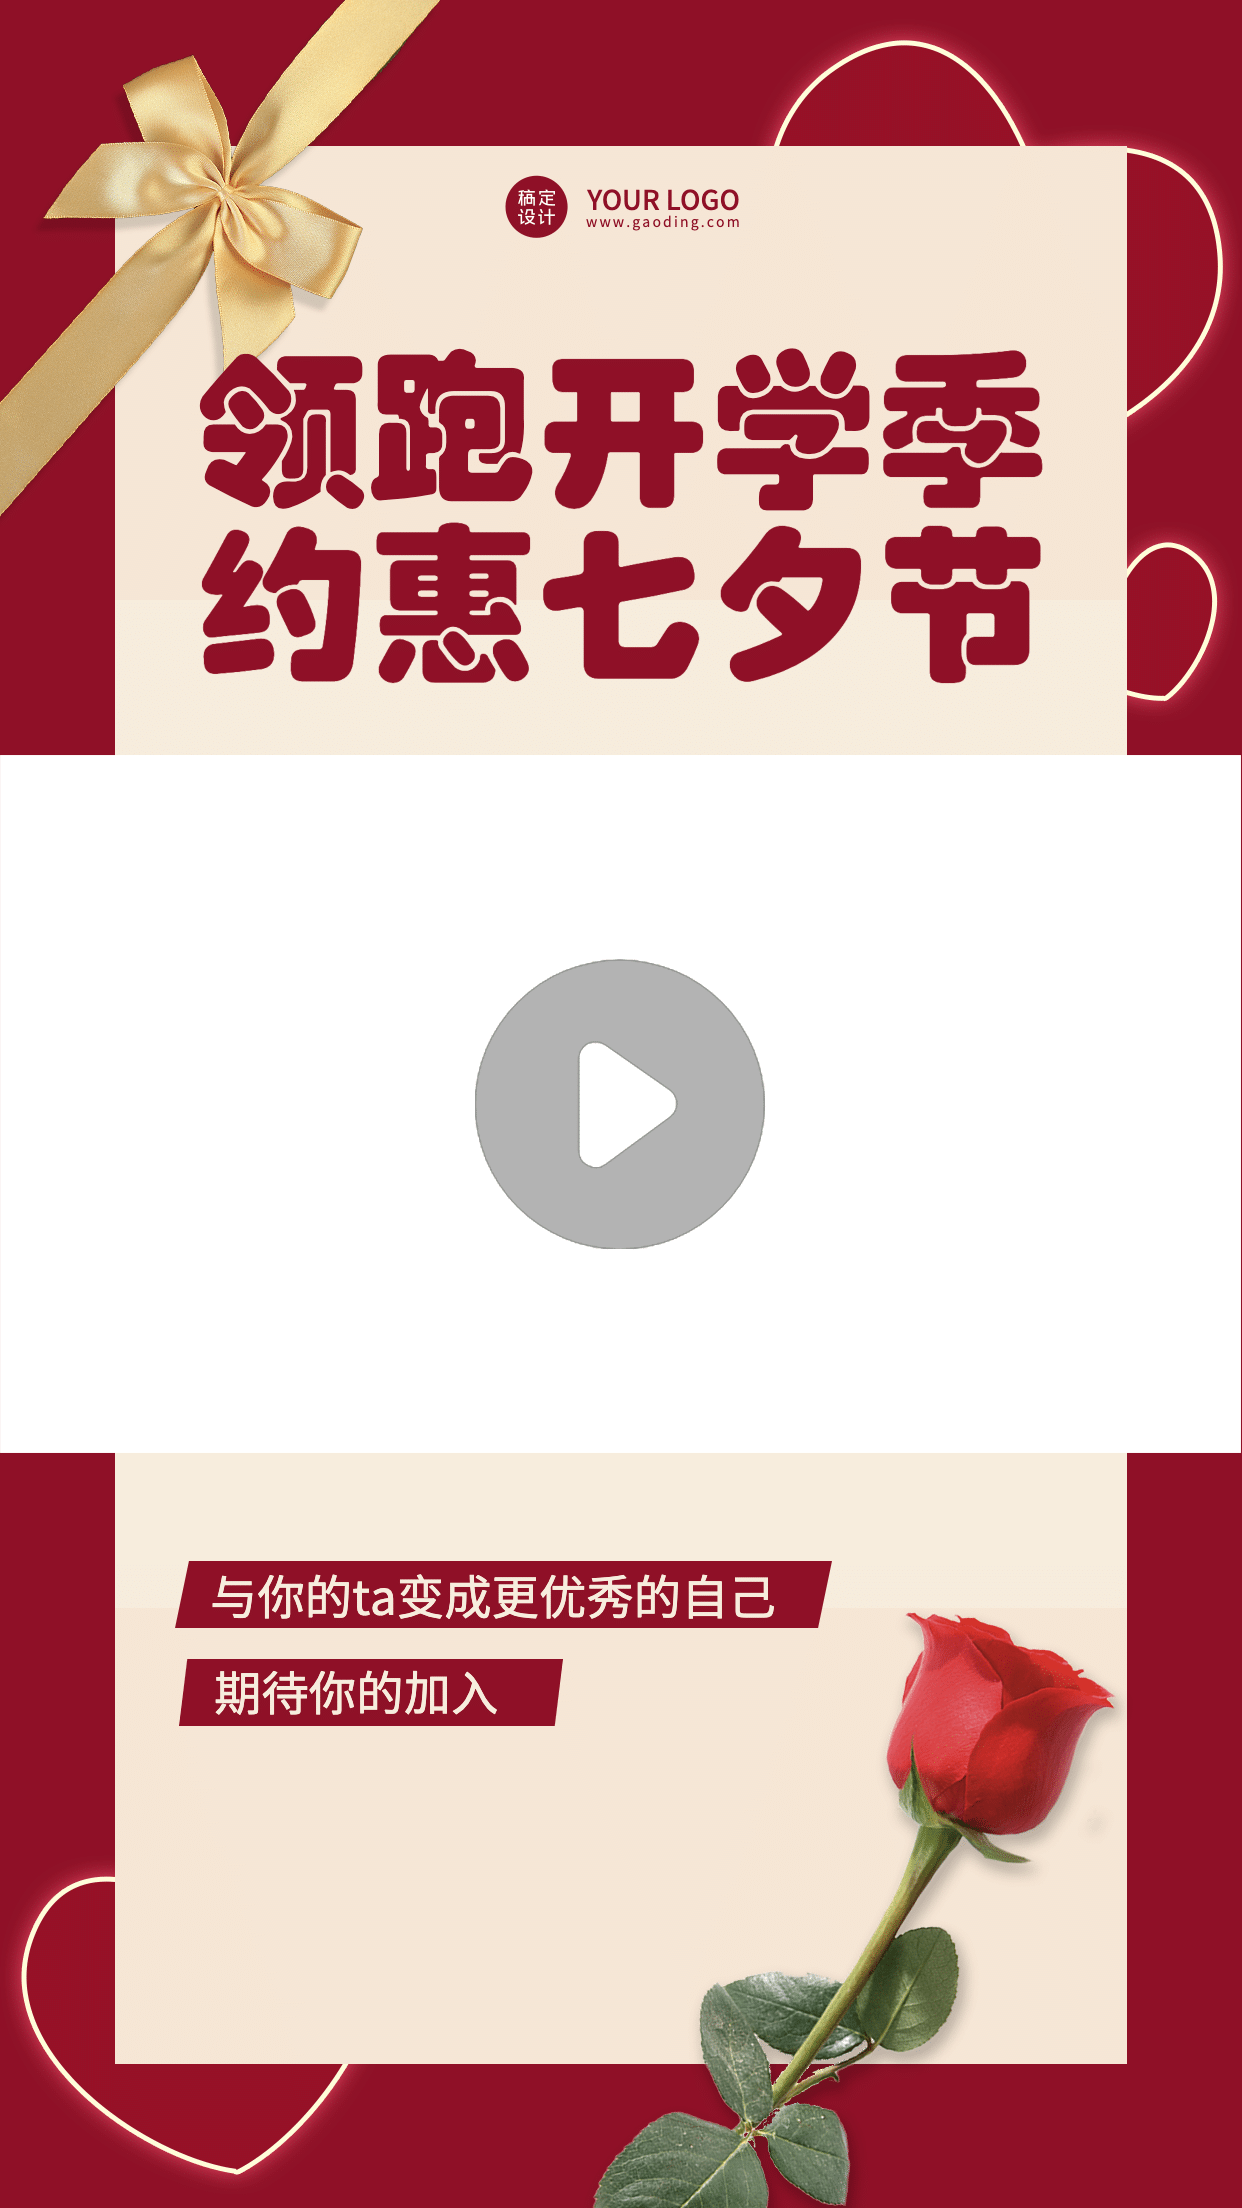 七夕情人节直播课程营销视频边框